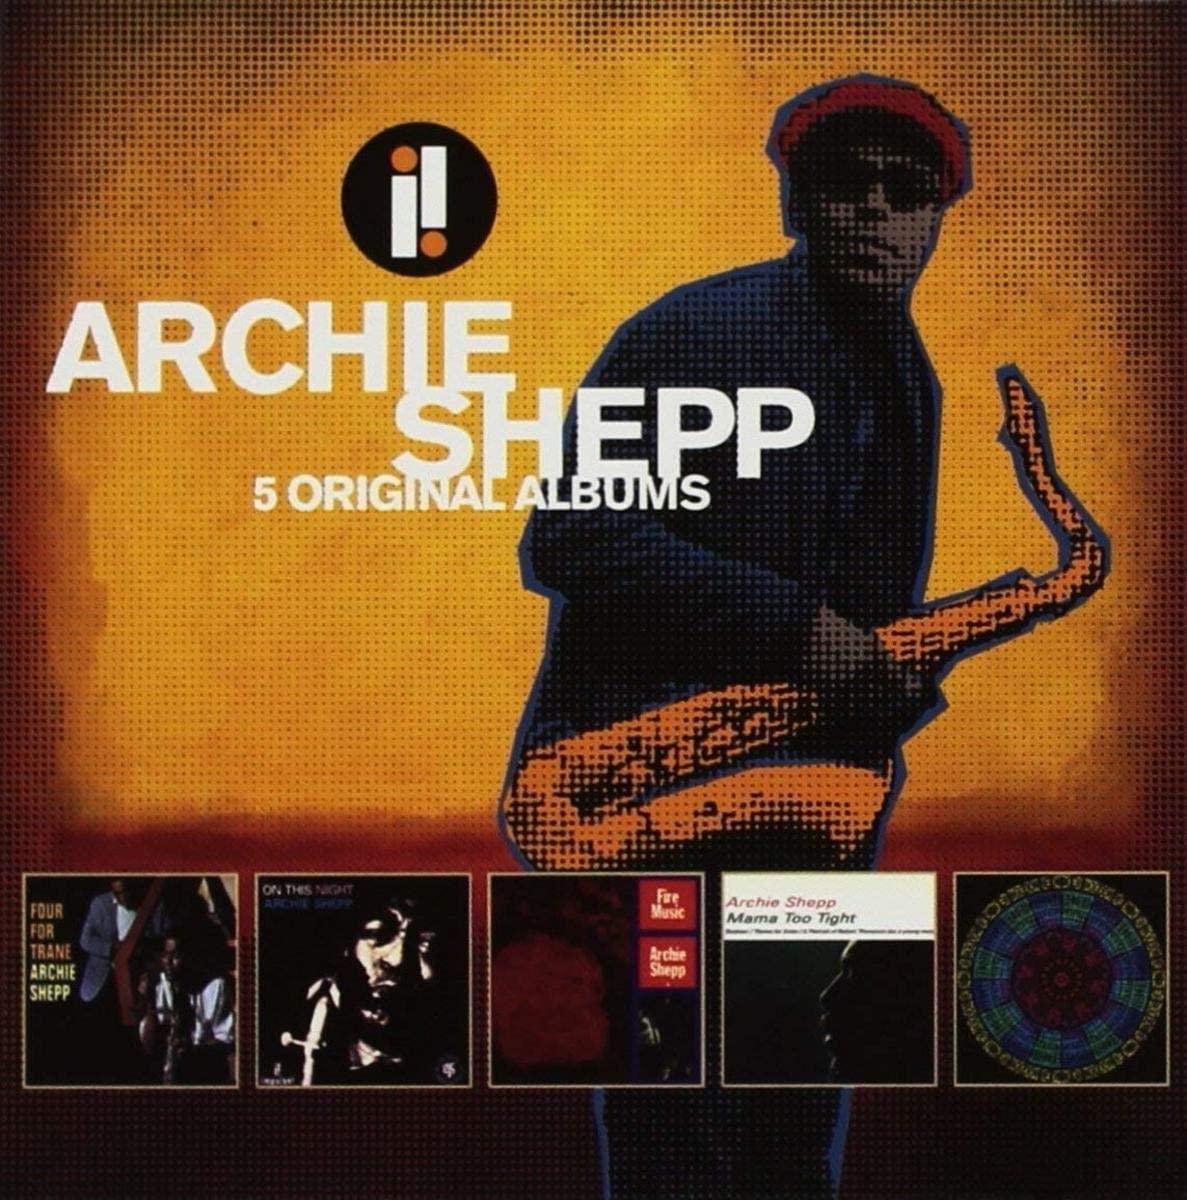 Archie Shepp - 5 Original Albums | Archie Shepp image0